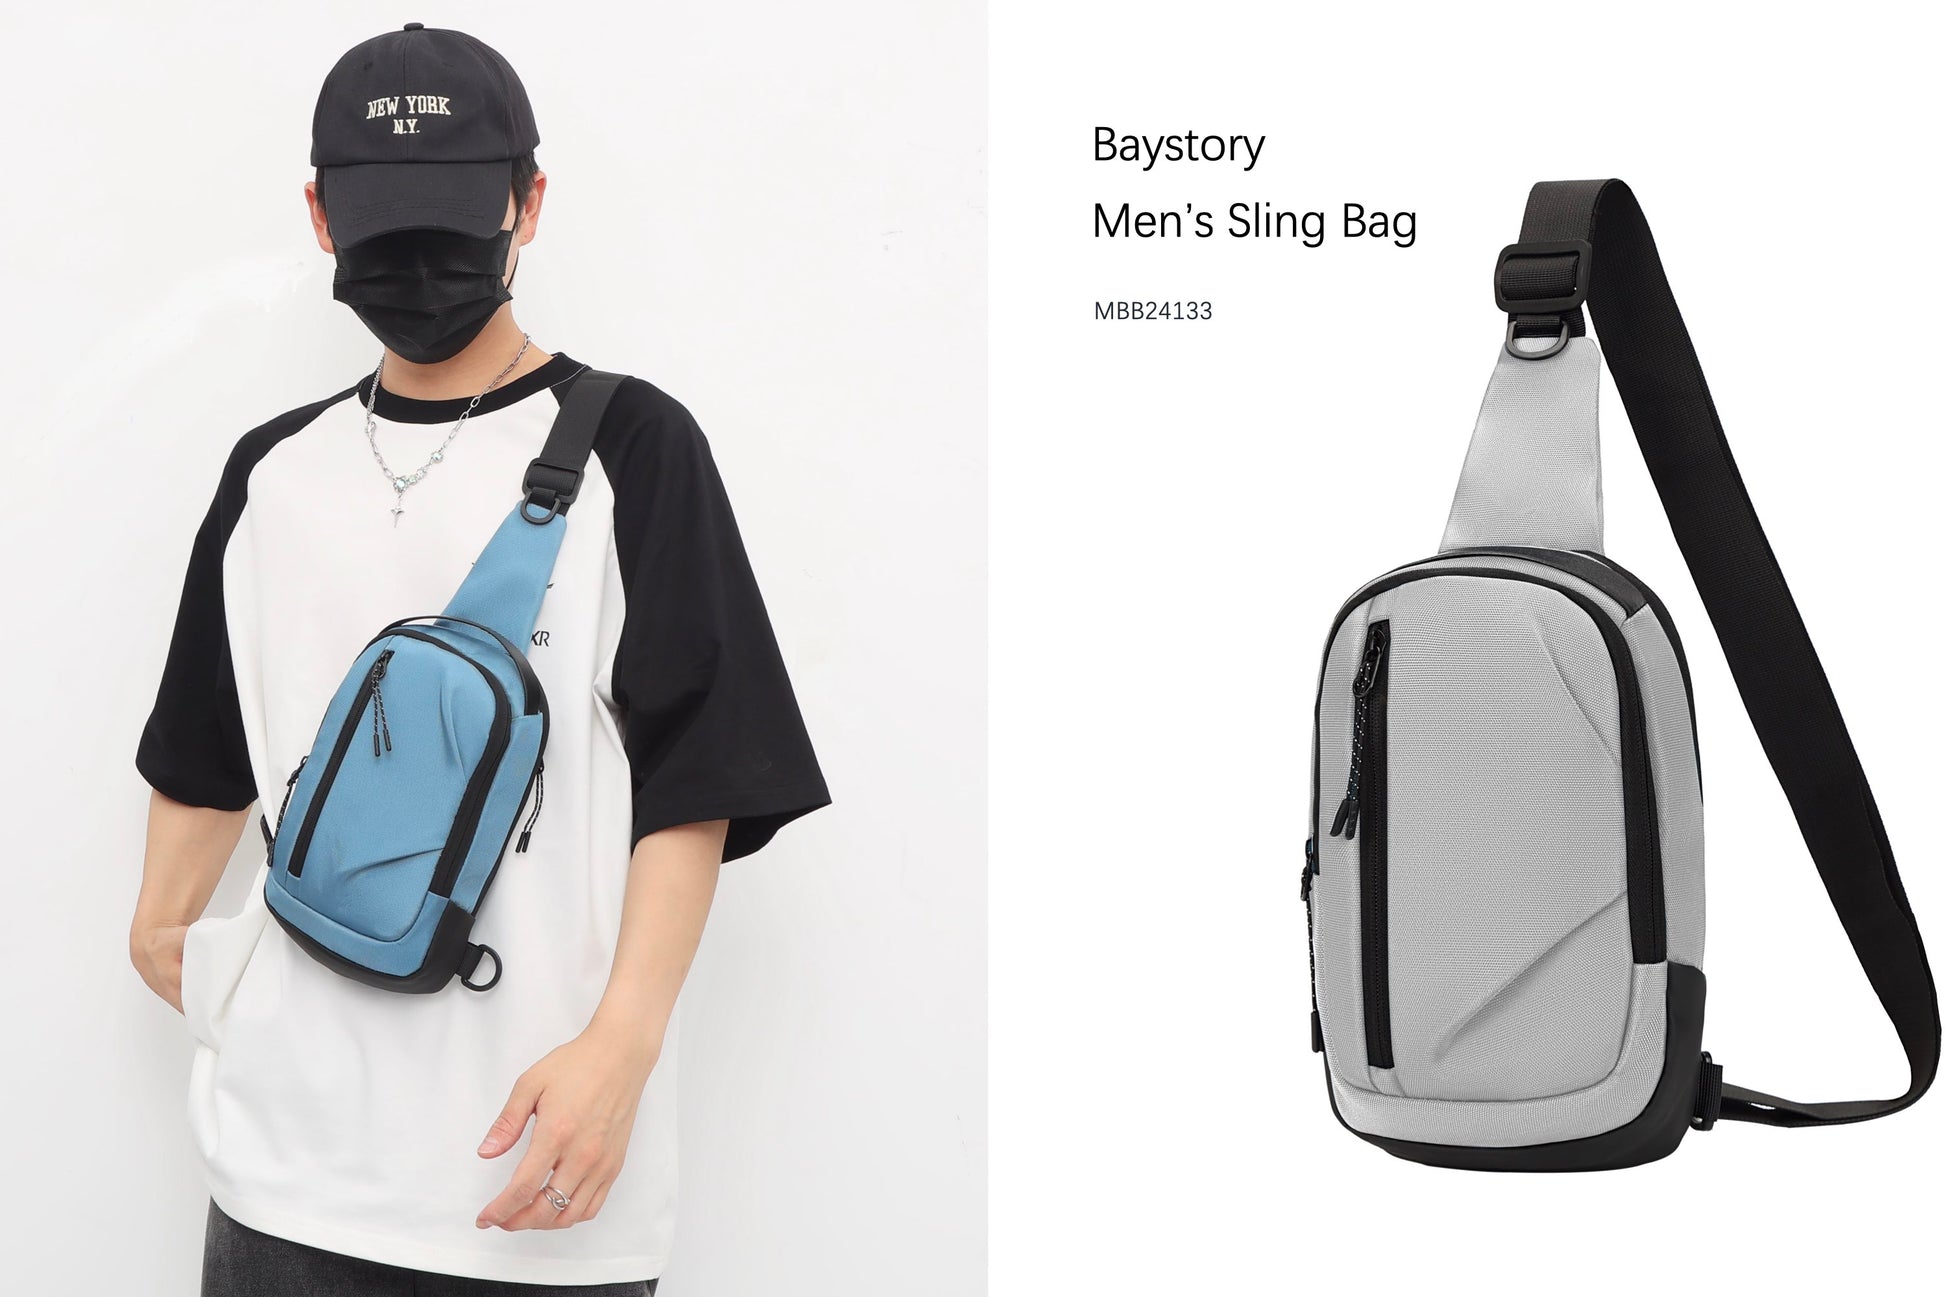 Baystory Men’s Sling Bag MBB24133 - Baystory